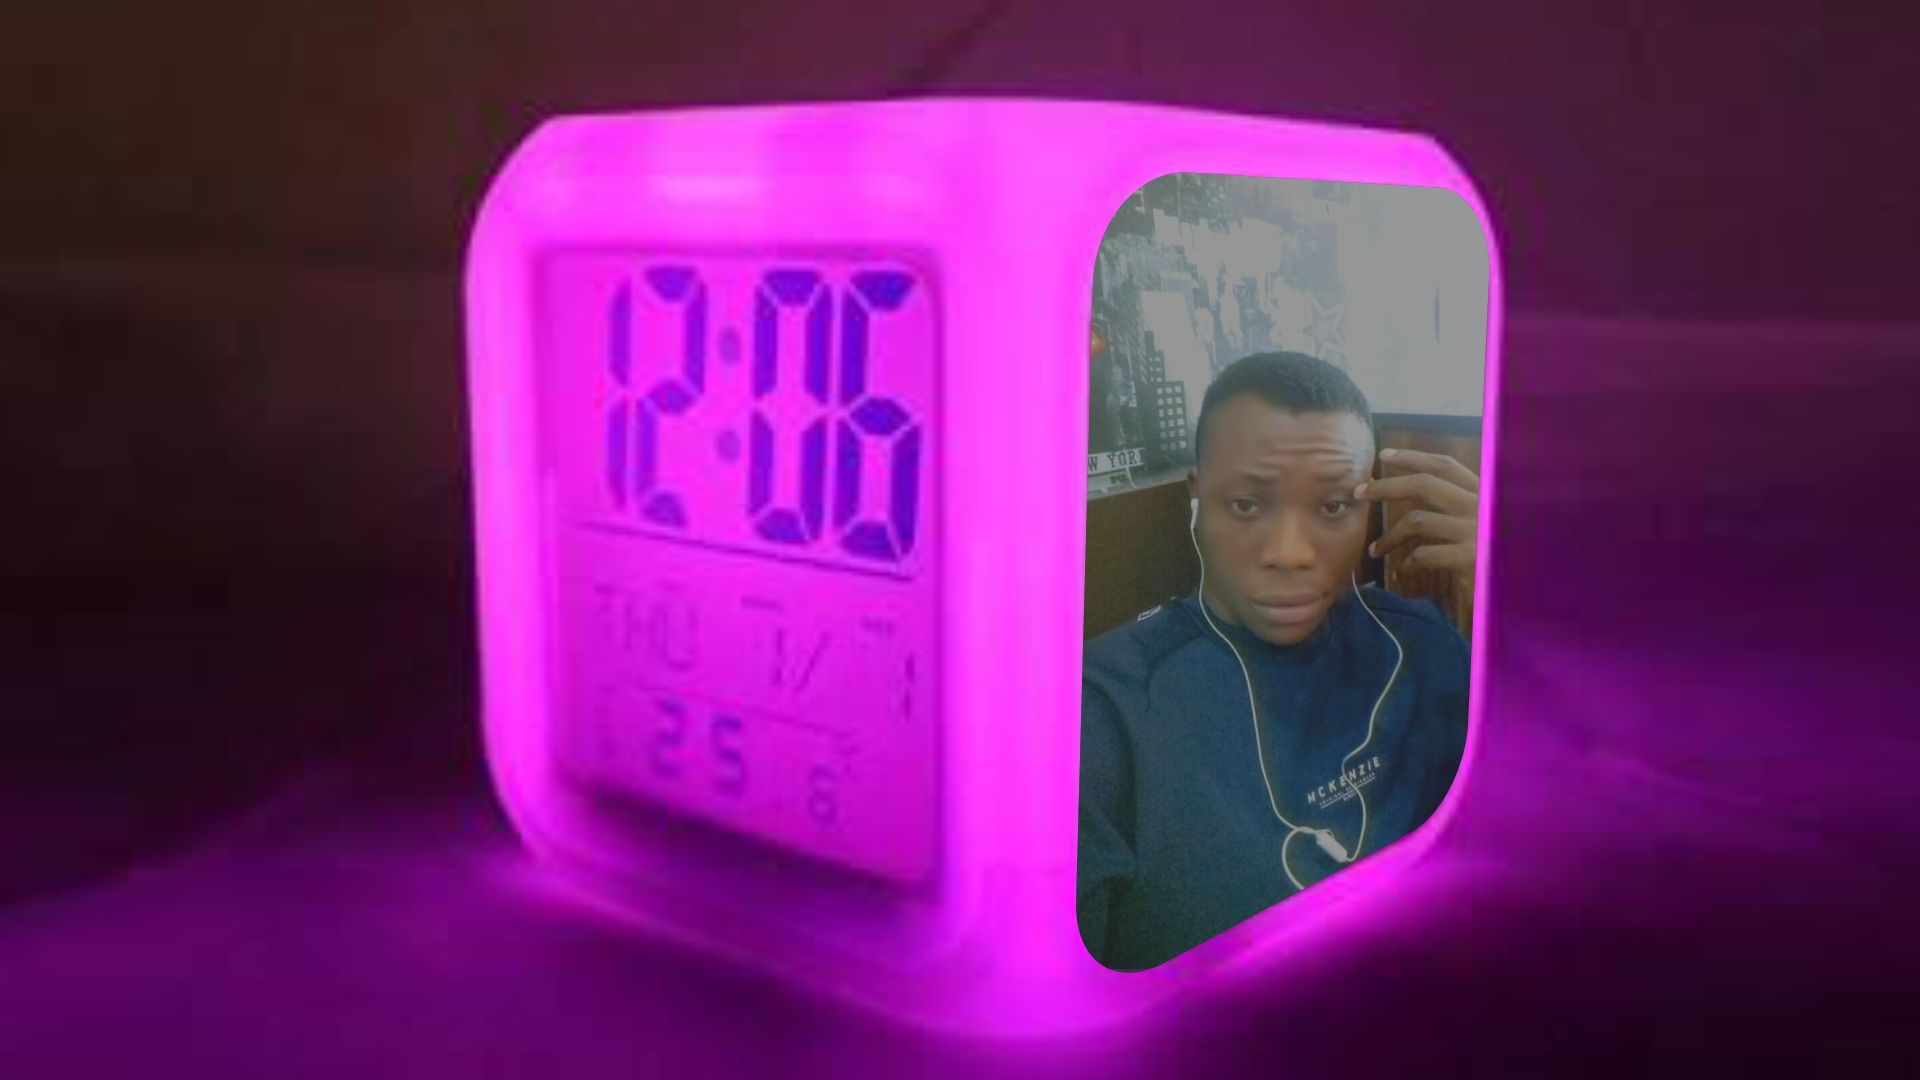 Digital Alarm Clock Design and Printing in Lagos Nigeria